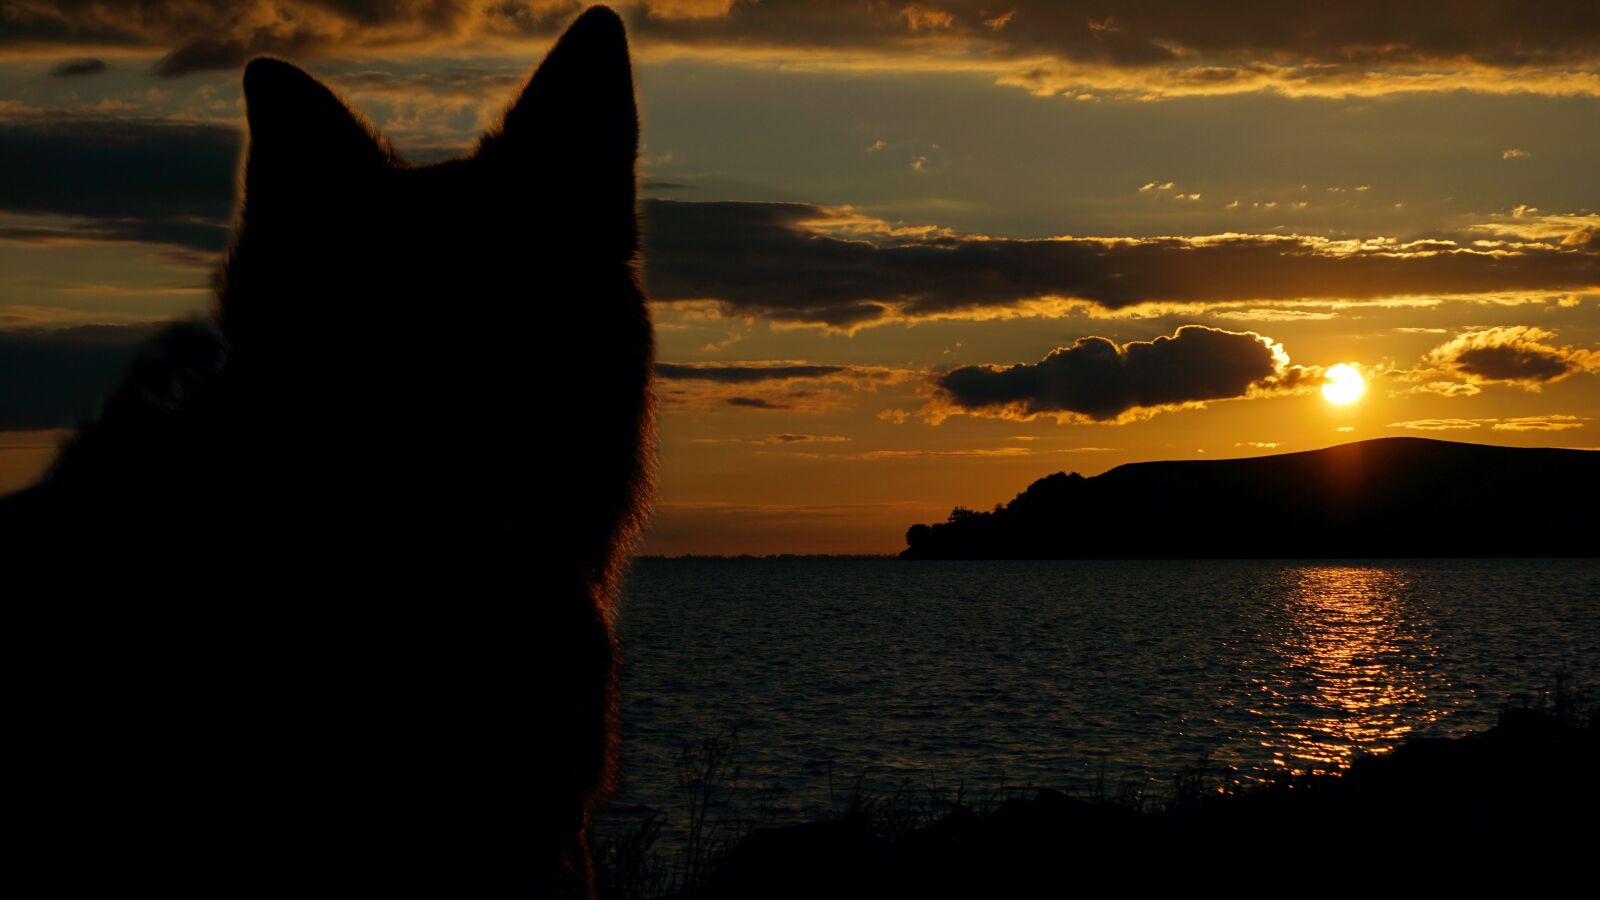 E 55-210mm F4.5-6.3 OSS sample photo. "Sunset, sch fer dog" photography